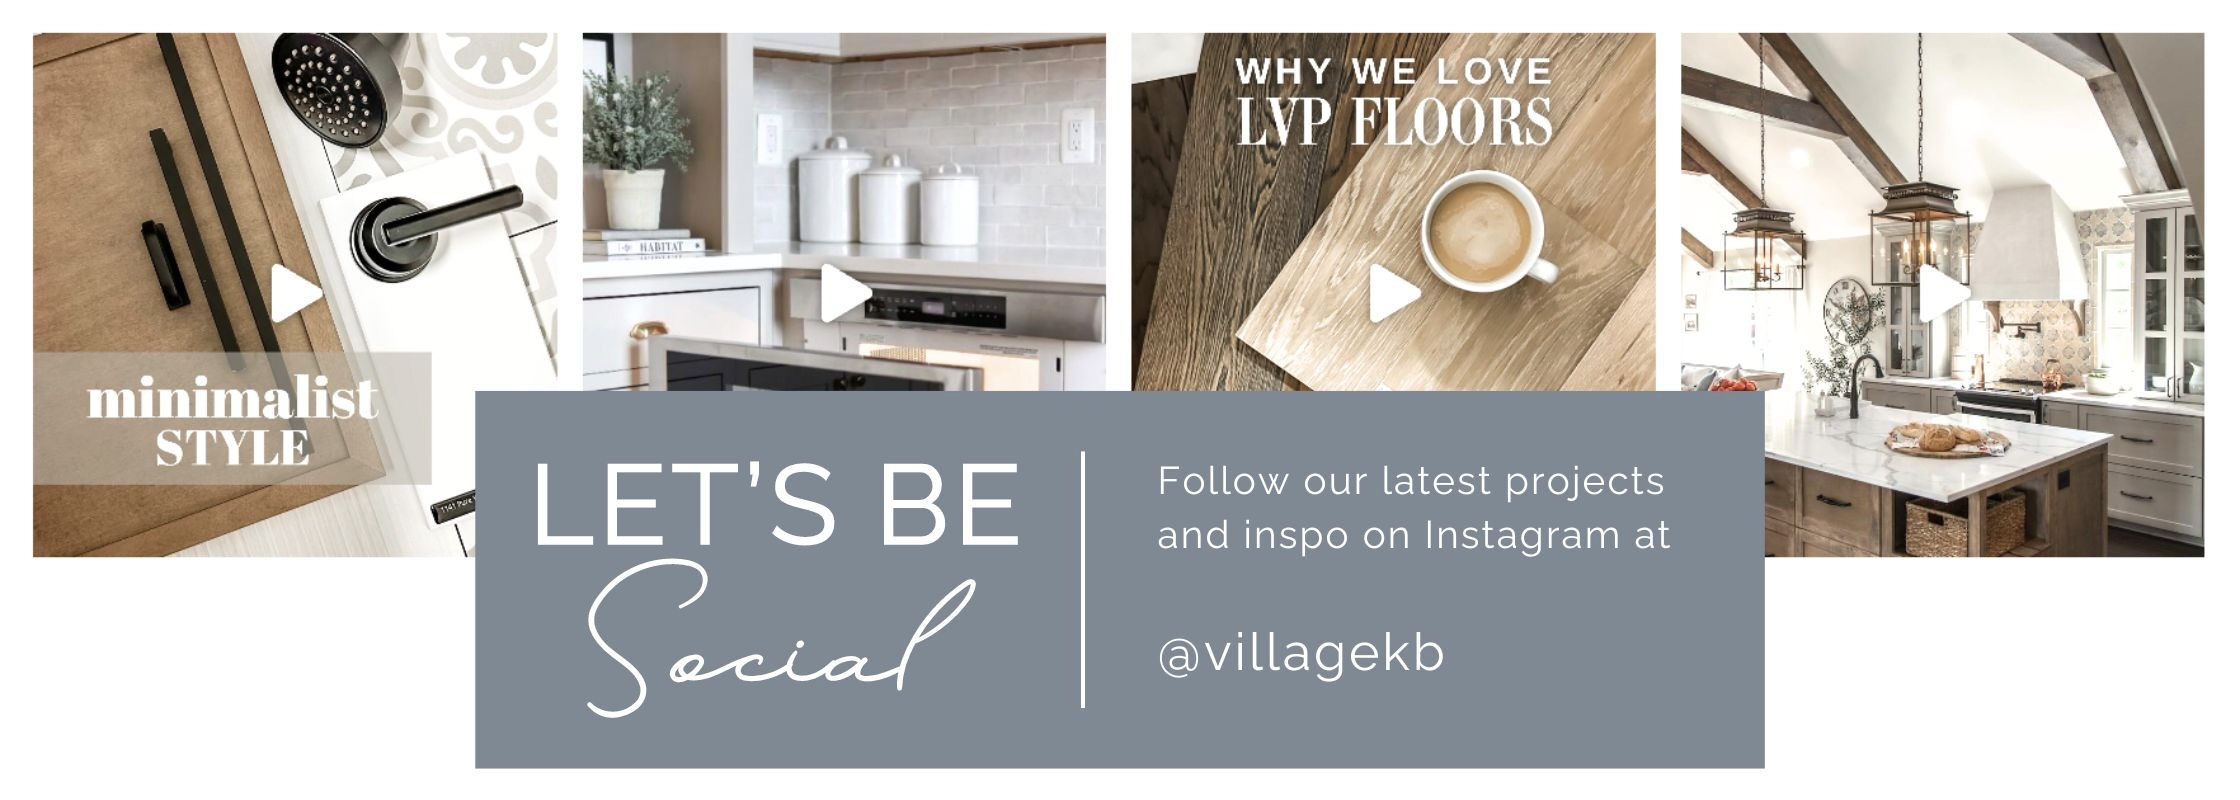 Let's be social - follow us on instagram @villagekb